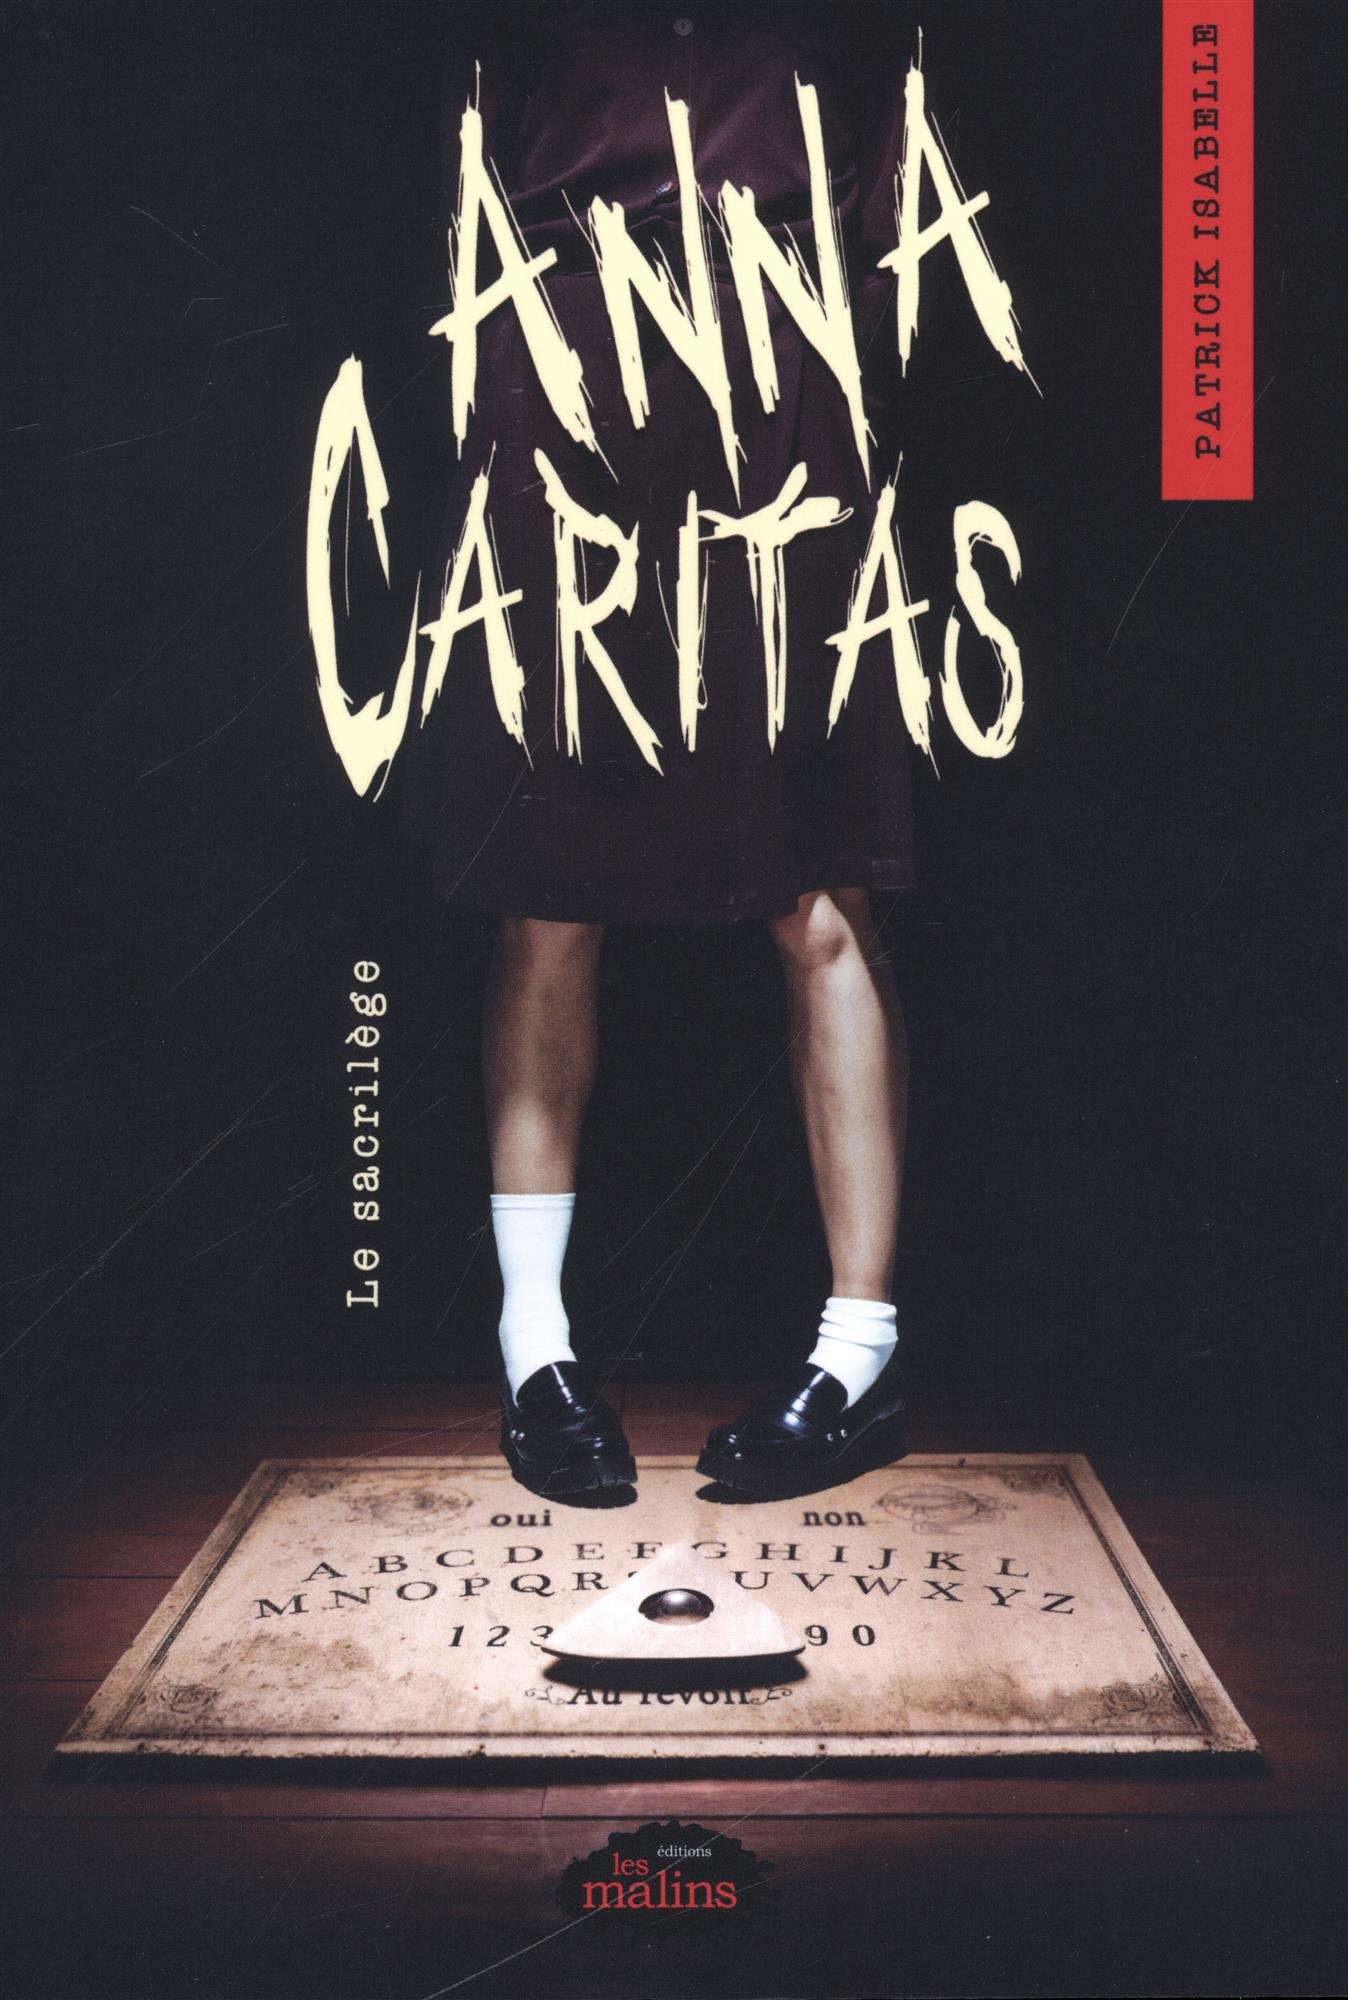 Couverture du livre de Patrick Isabelle intitulé Anna Caritas.